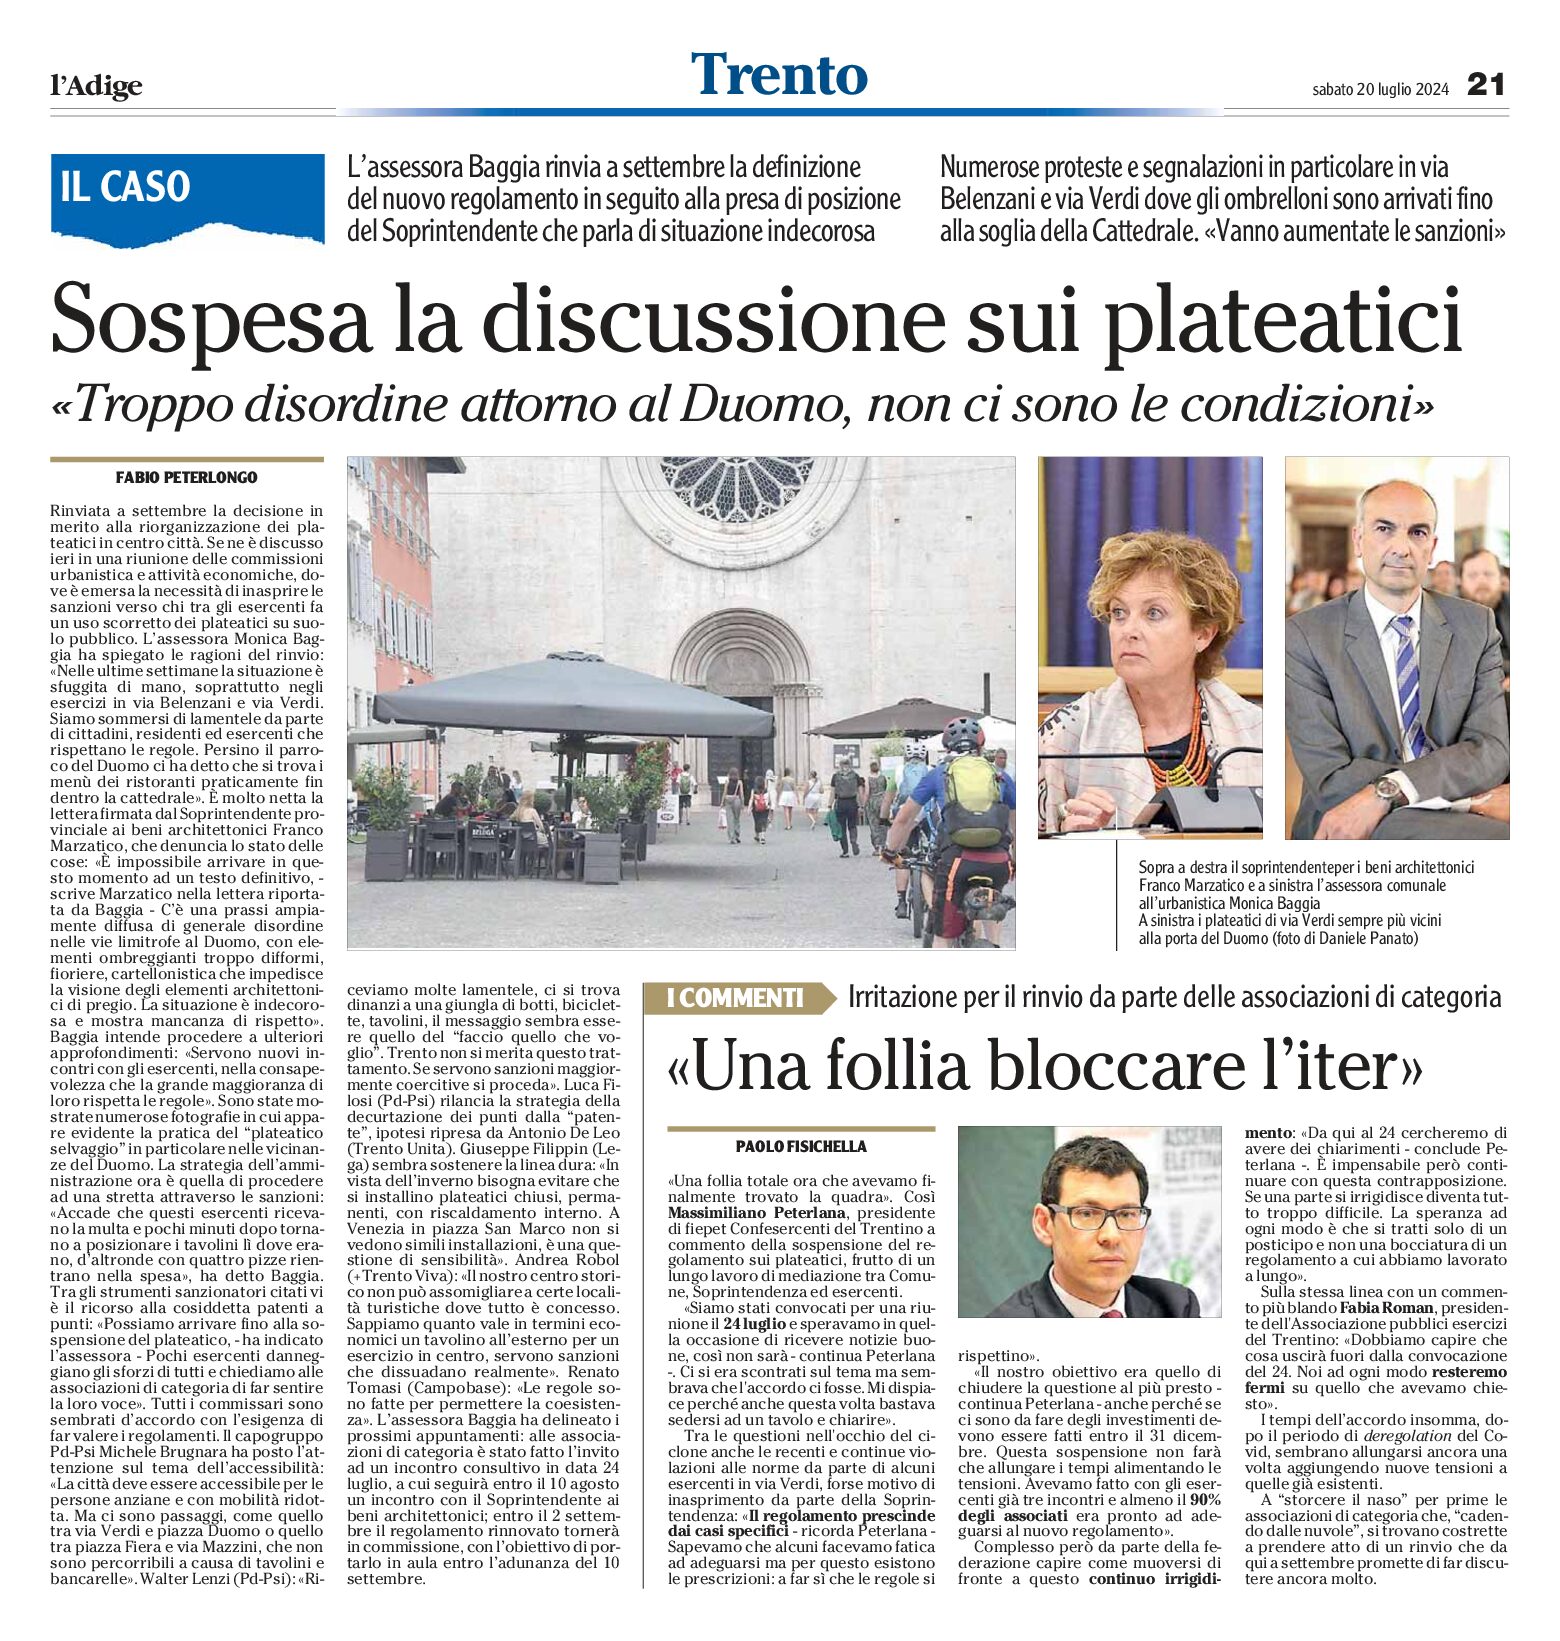 Trento: sospesa la discussione sui plateatici